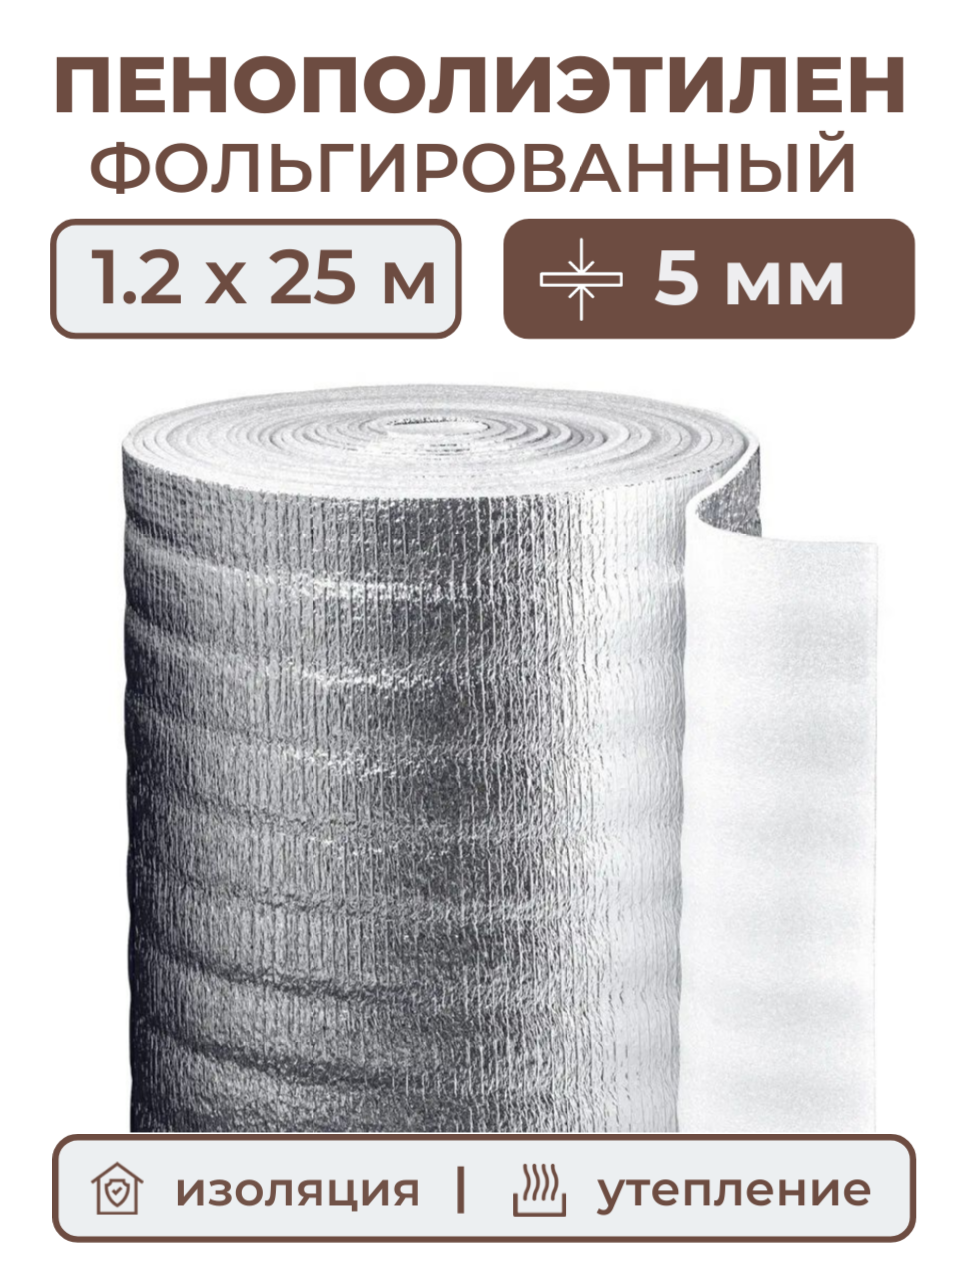 Вспененный фольгированный полиэтилен 5 мм, рулон 1.2х25 м (30 м2), утеплитель пенополиэтилен с фольгой, подложка металлизированная теплоизоляция